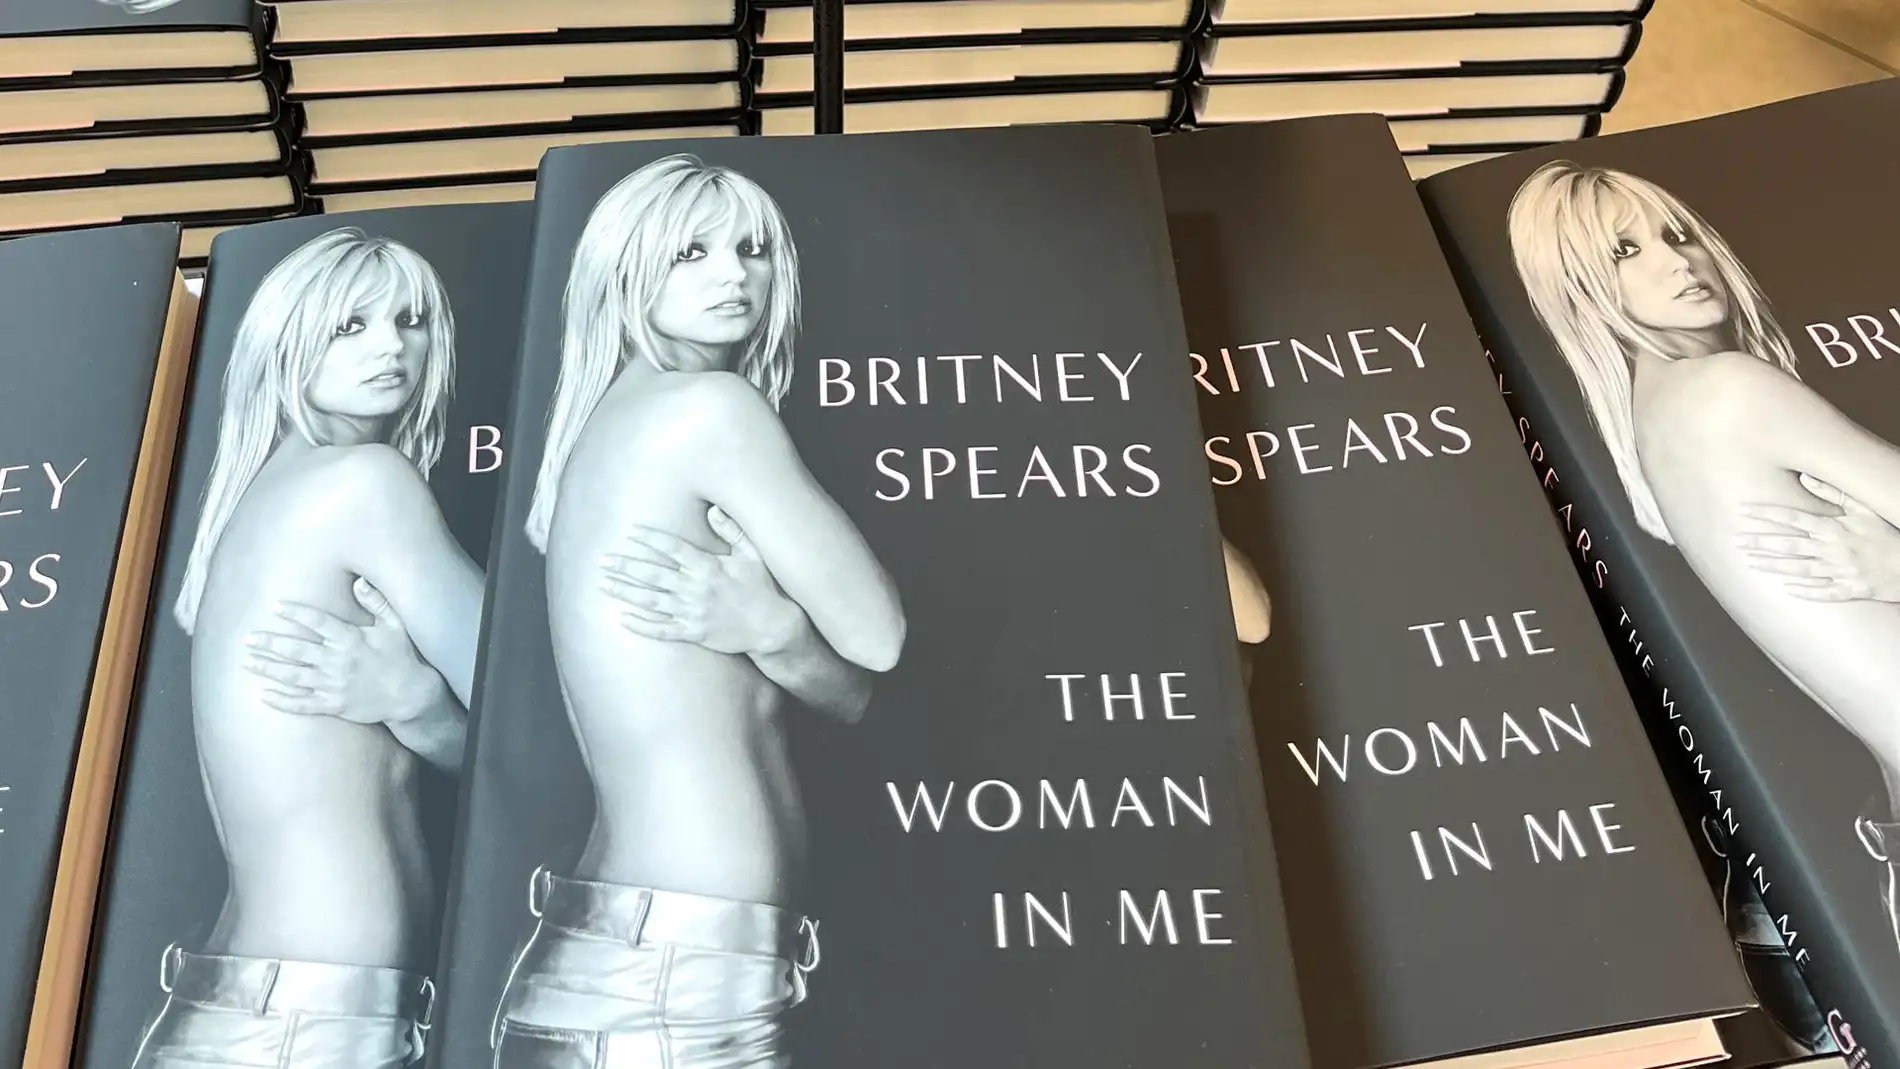 Fotografía de unos ejemplares de las memorias de Britney Spears